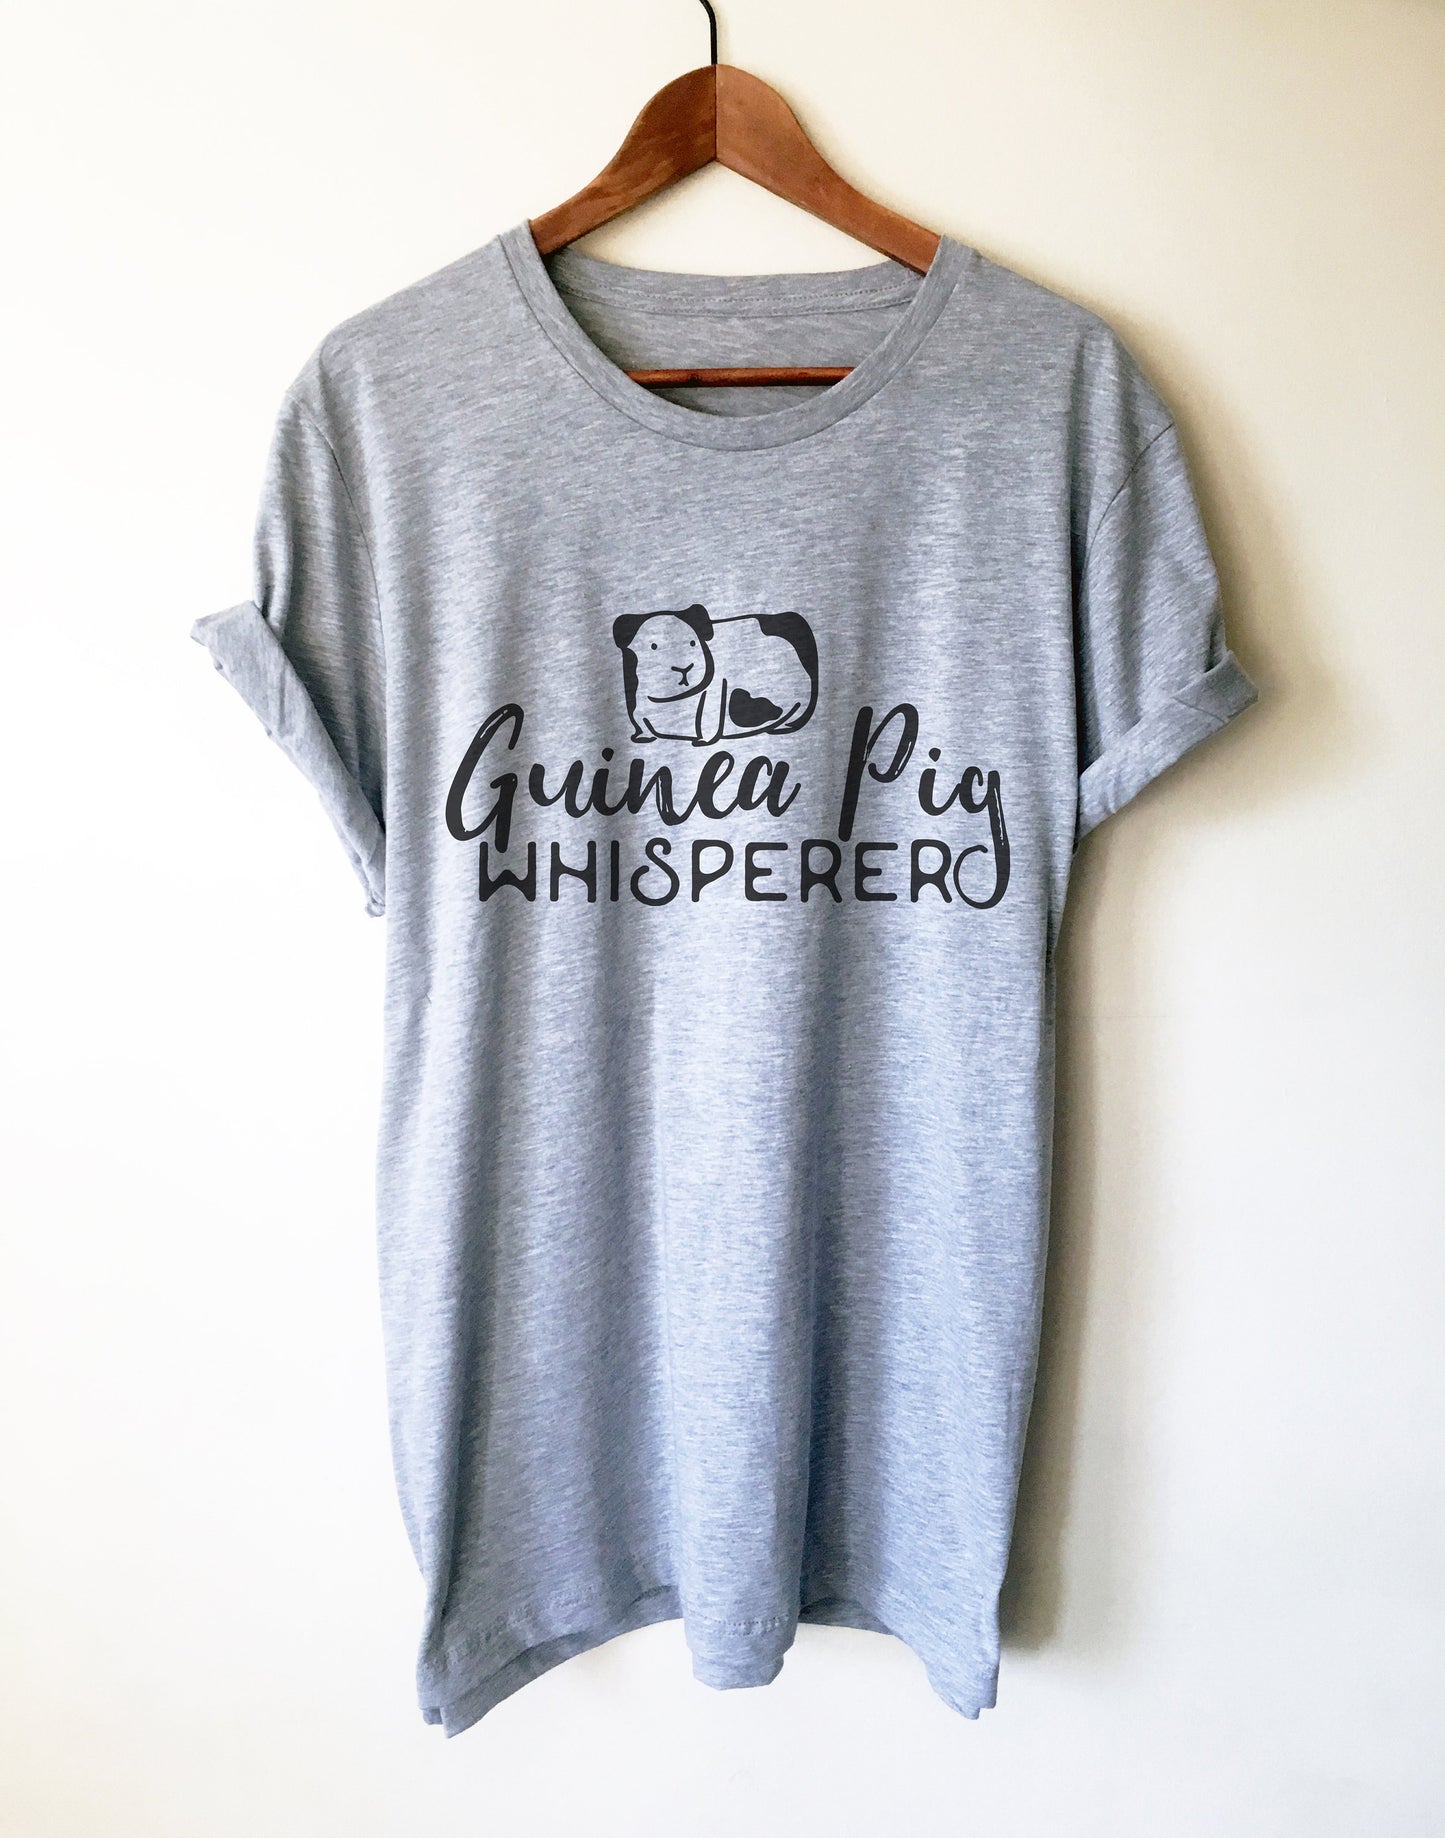 Guinea Pig Whisperer Unisex Shirt -